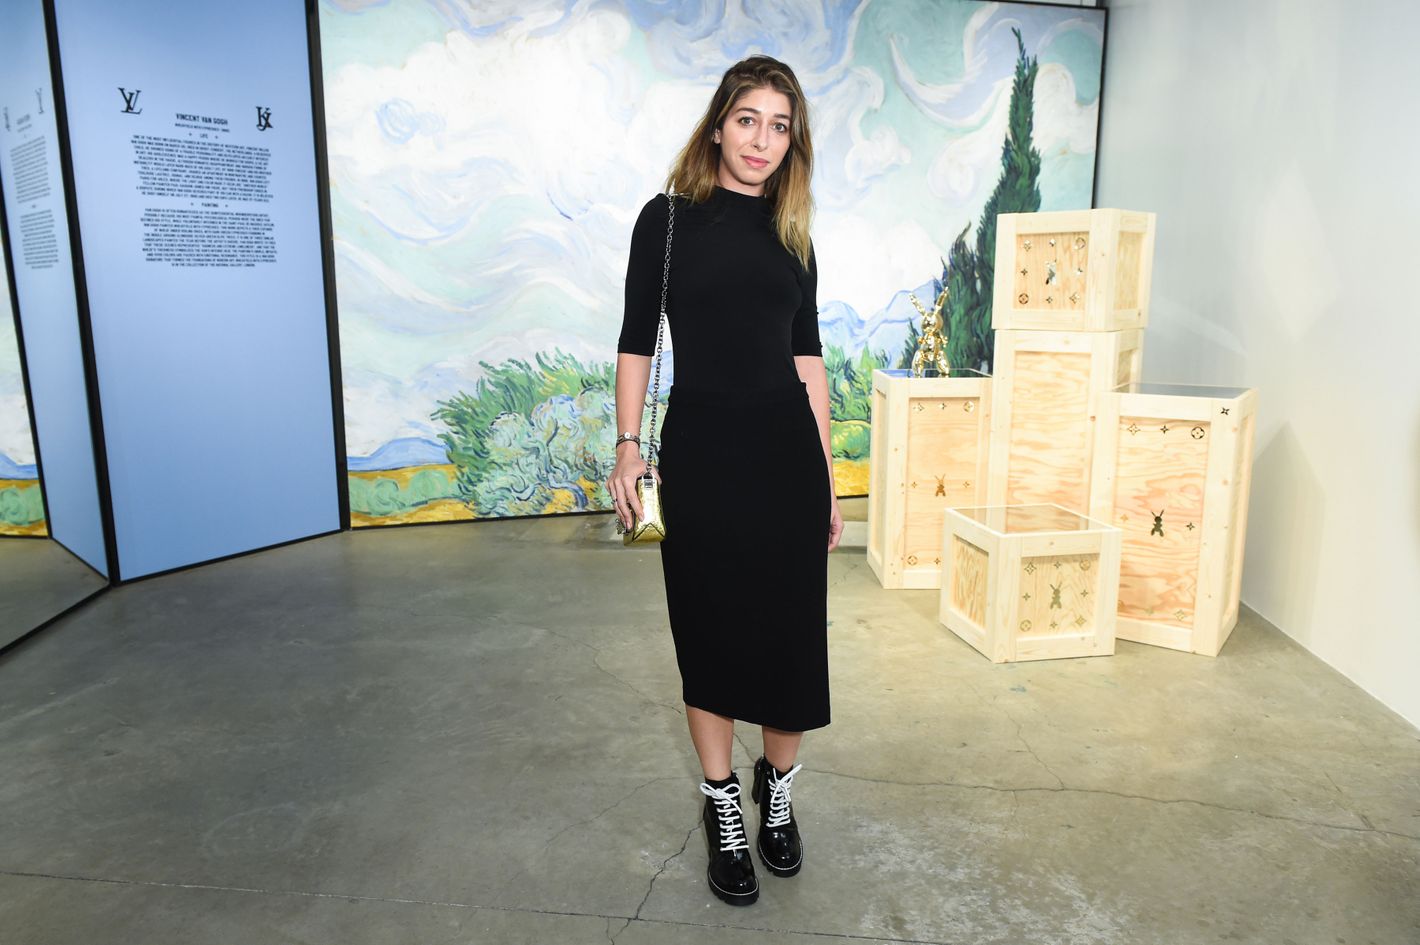 Louis Vuitton's Pop-Up Celebrates Jeff Koons Collaboration